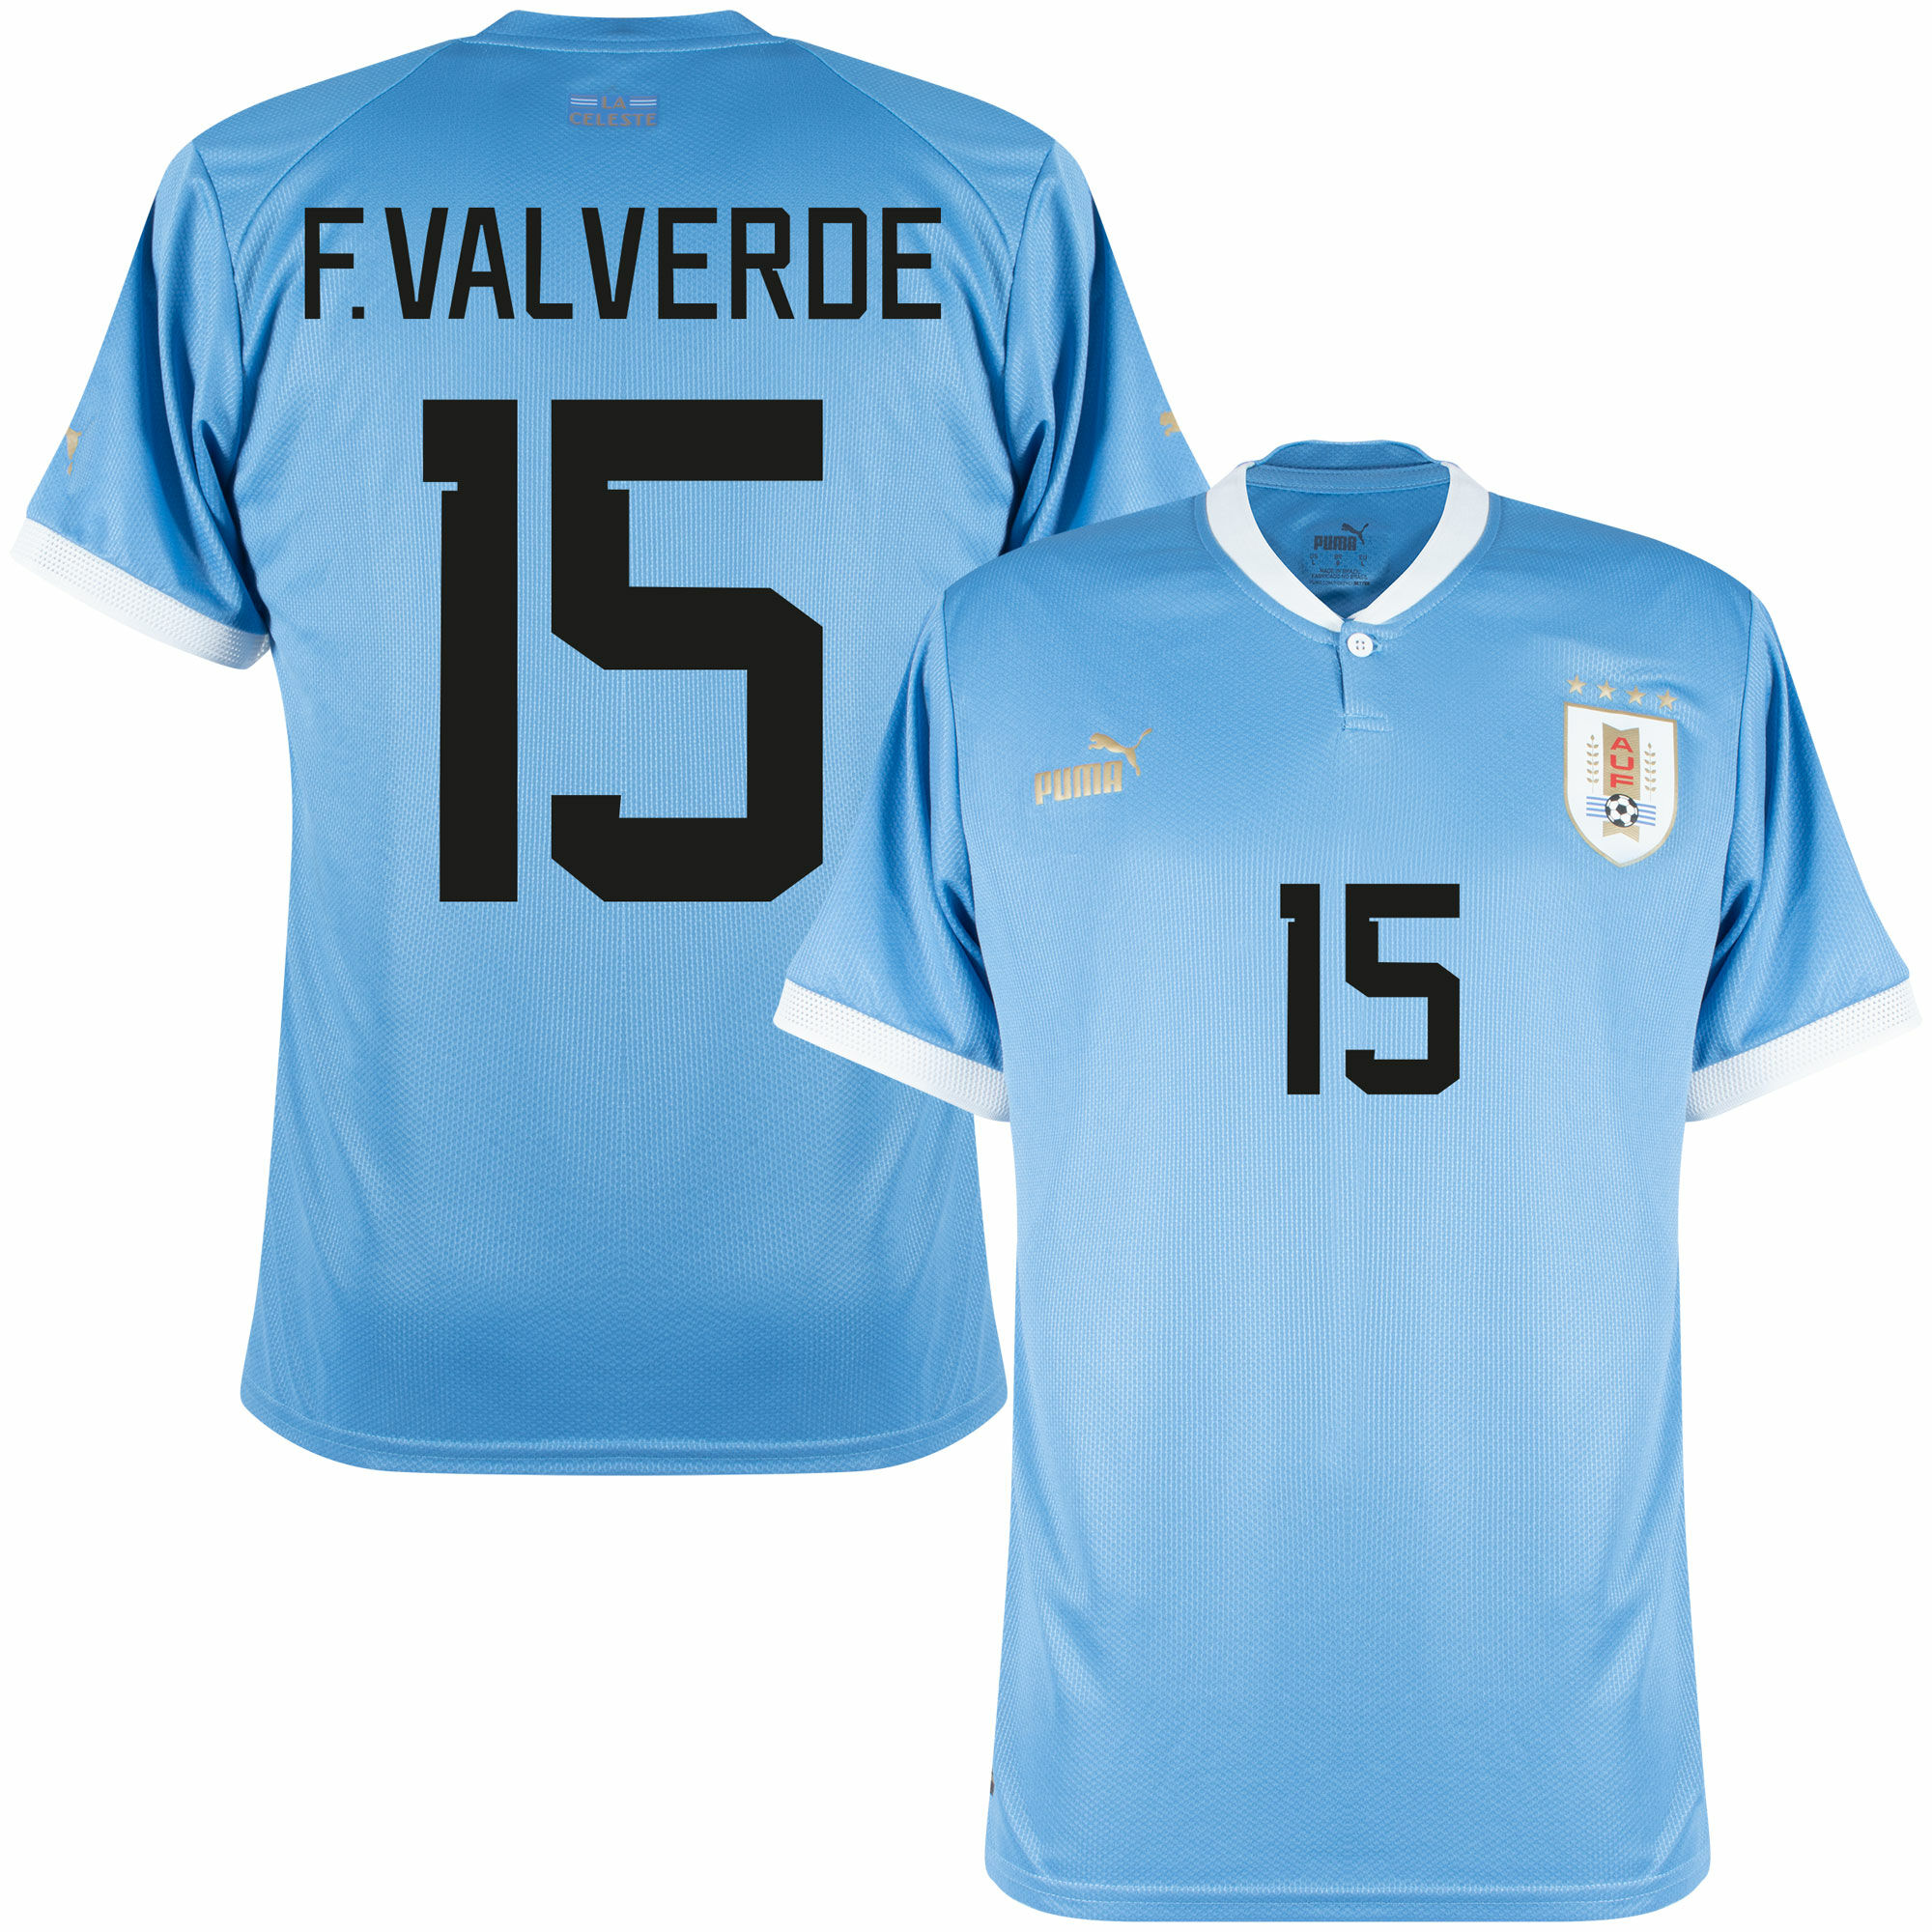 Uruguay - Dres fotbalový - oficiální potisk, domácí, sezóna 2022/23, Federico Valverde, číslo 15, modrý